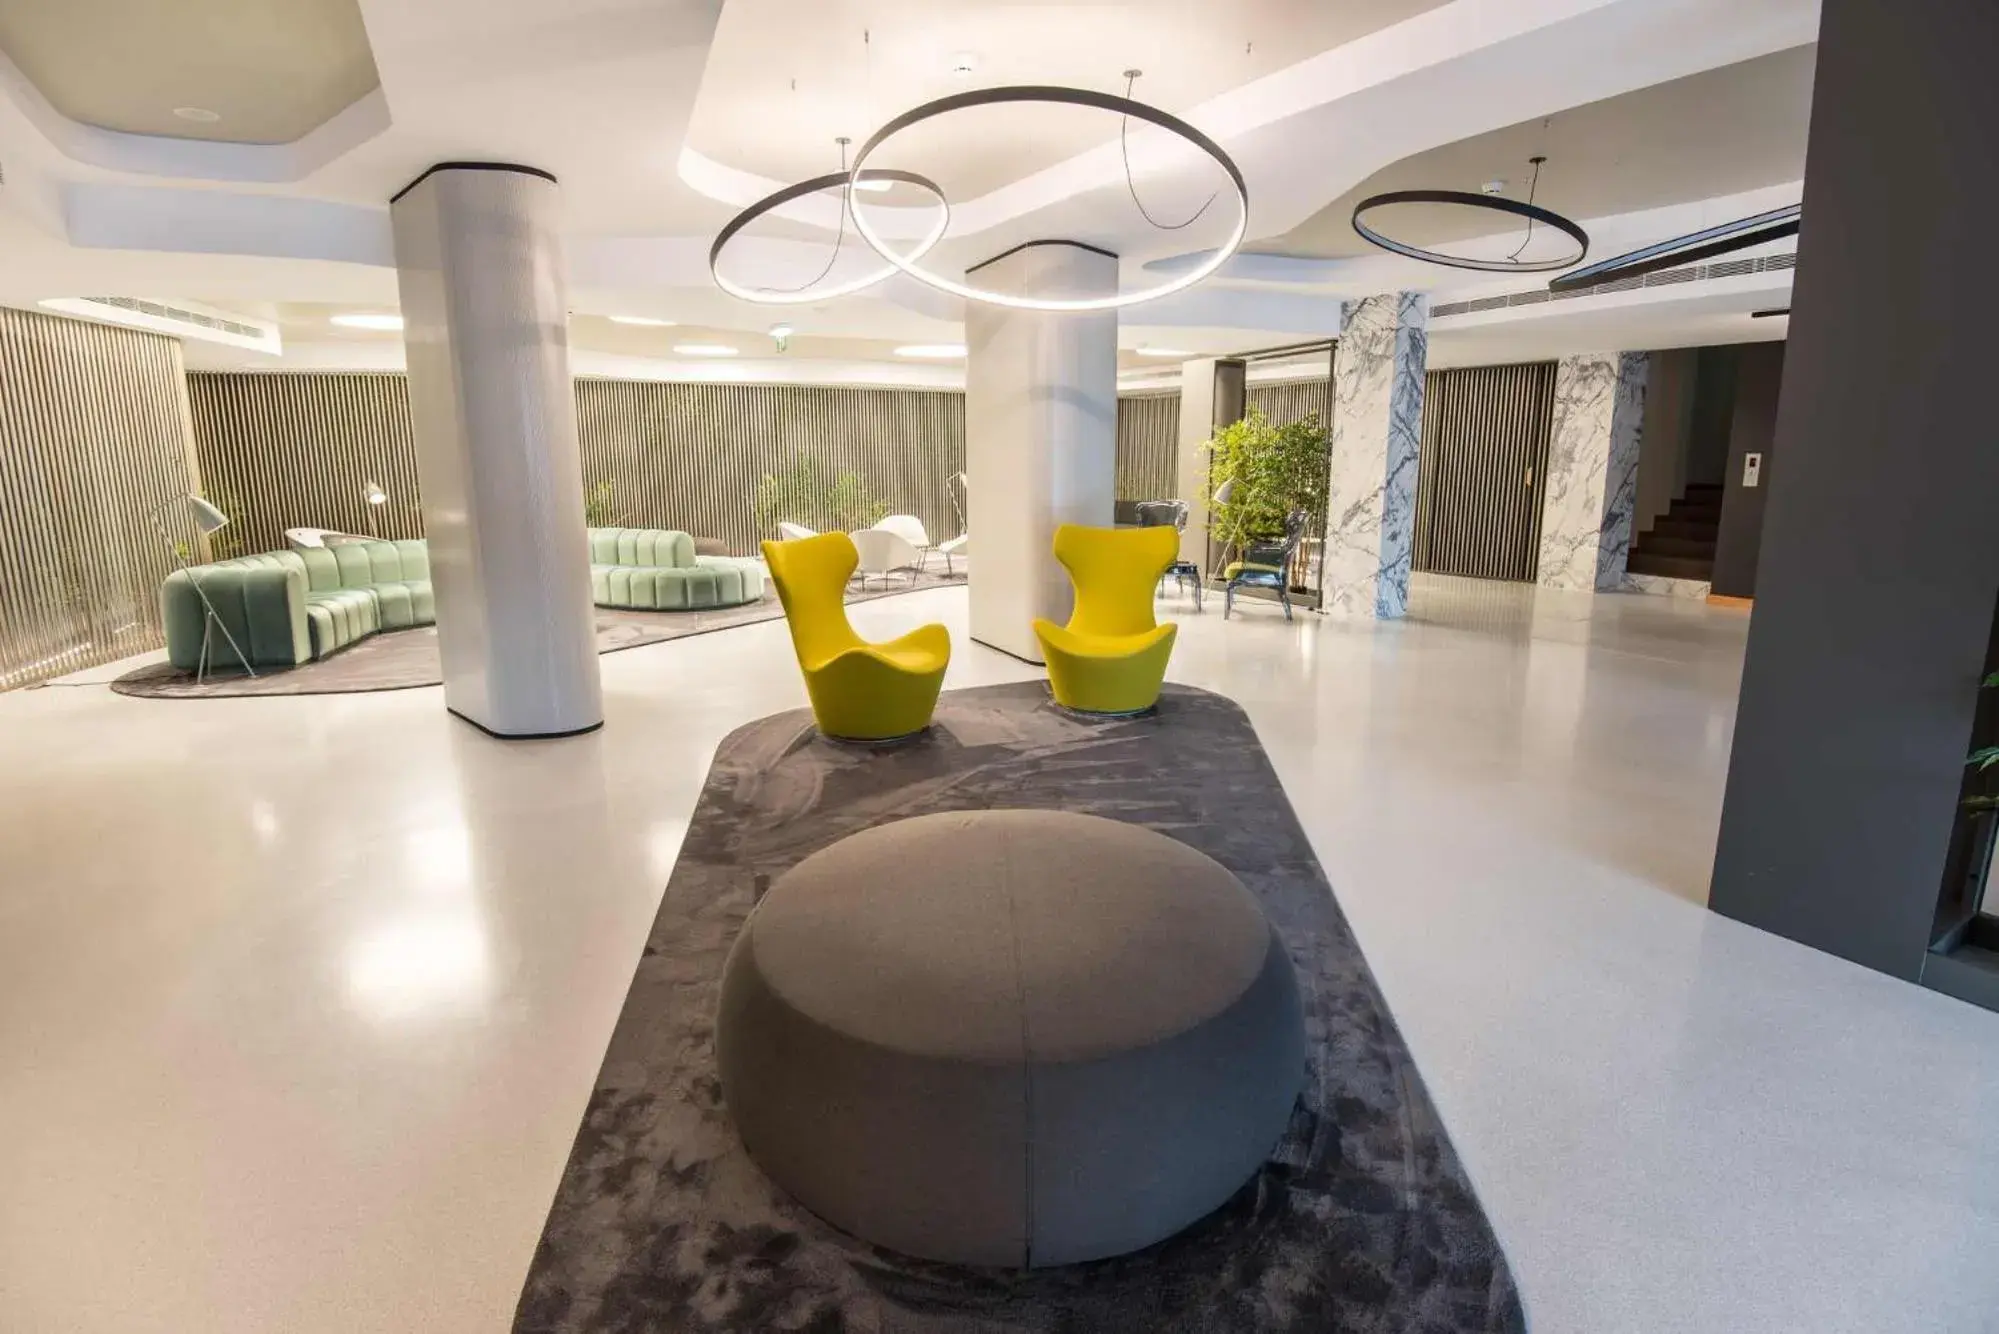 Lobby or reception in Azoris Angra Garden – Plaza Hotel